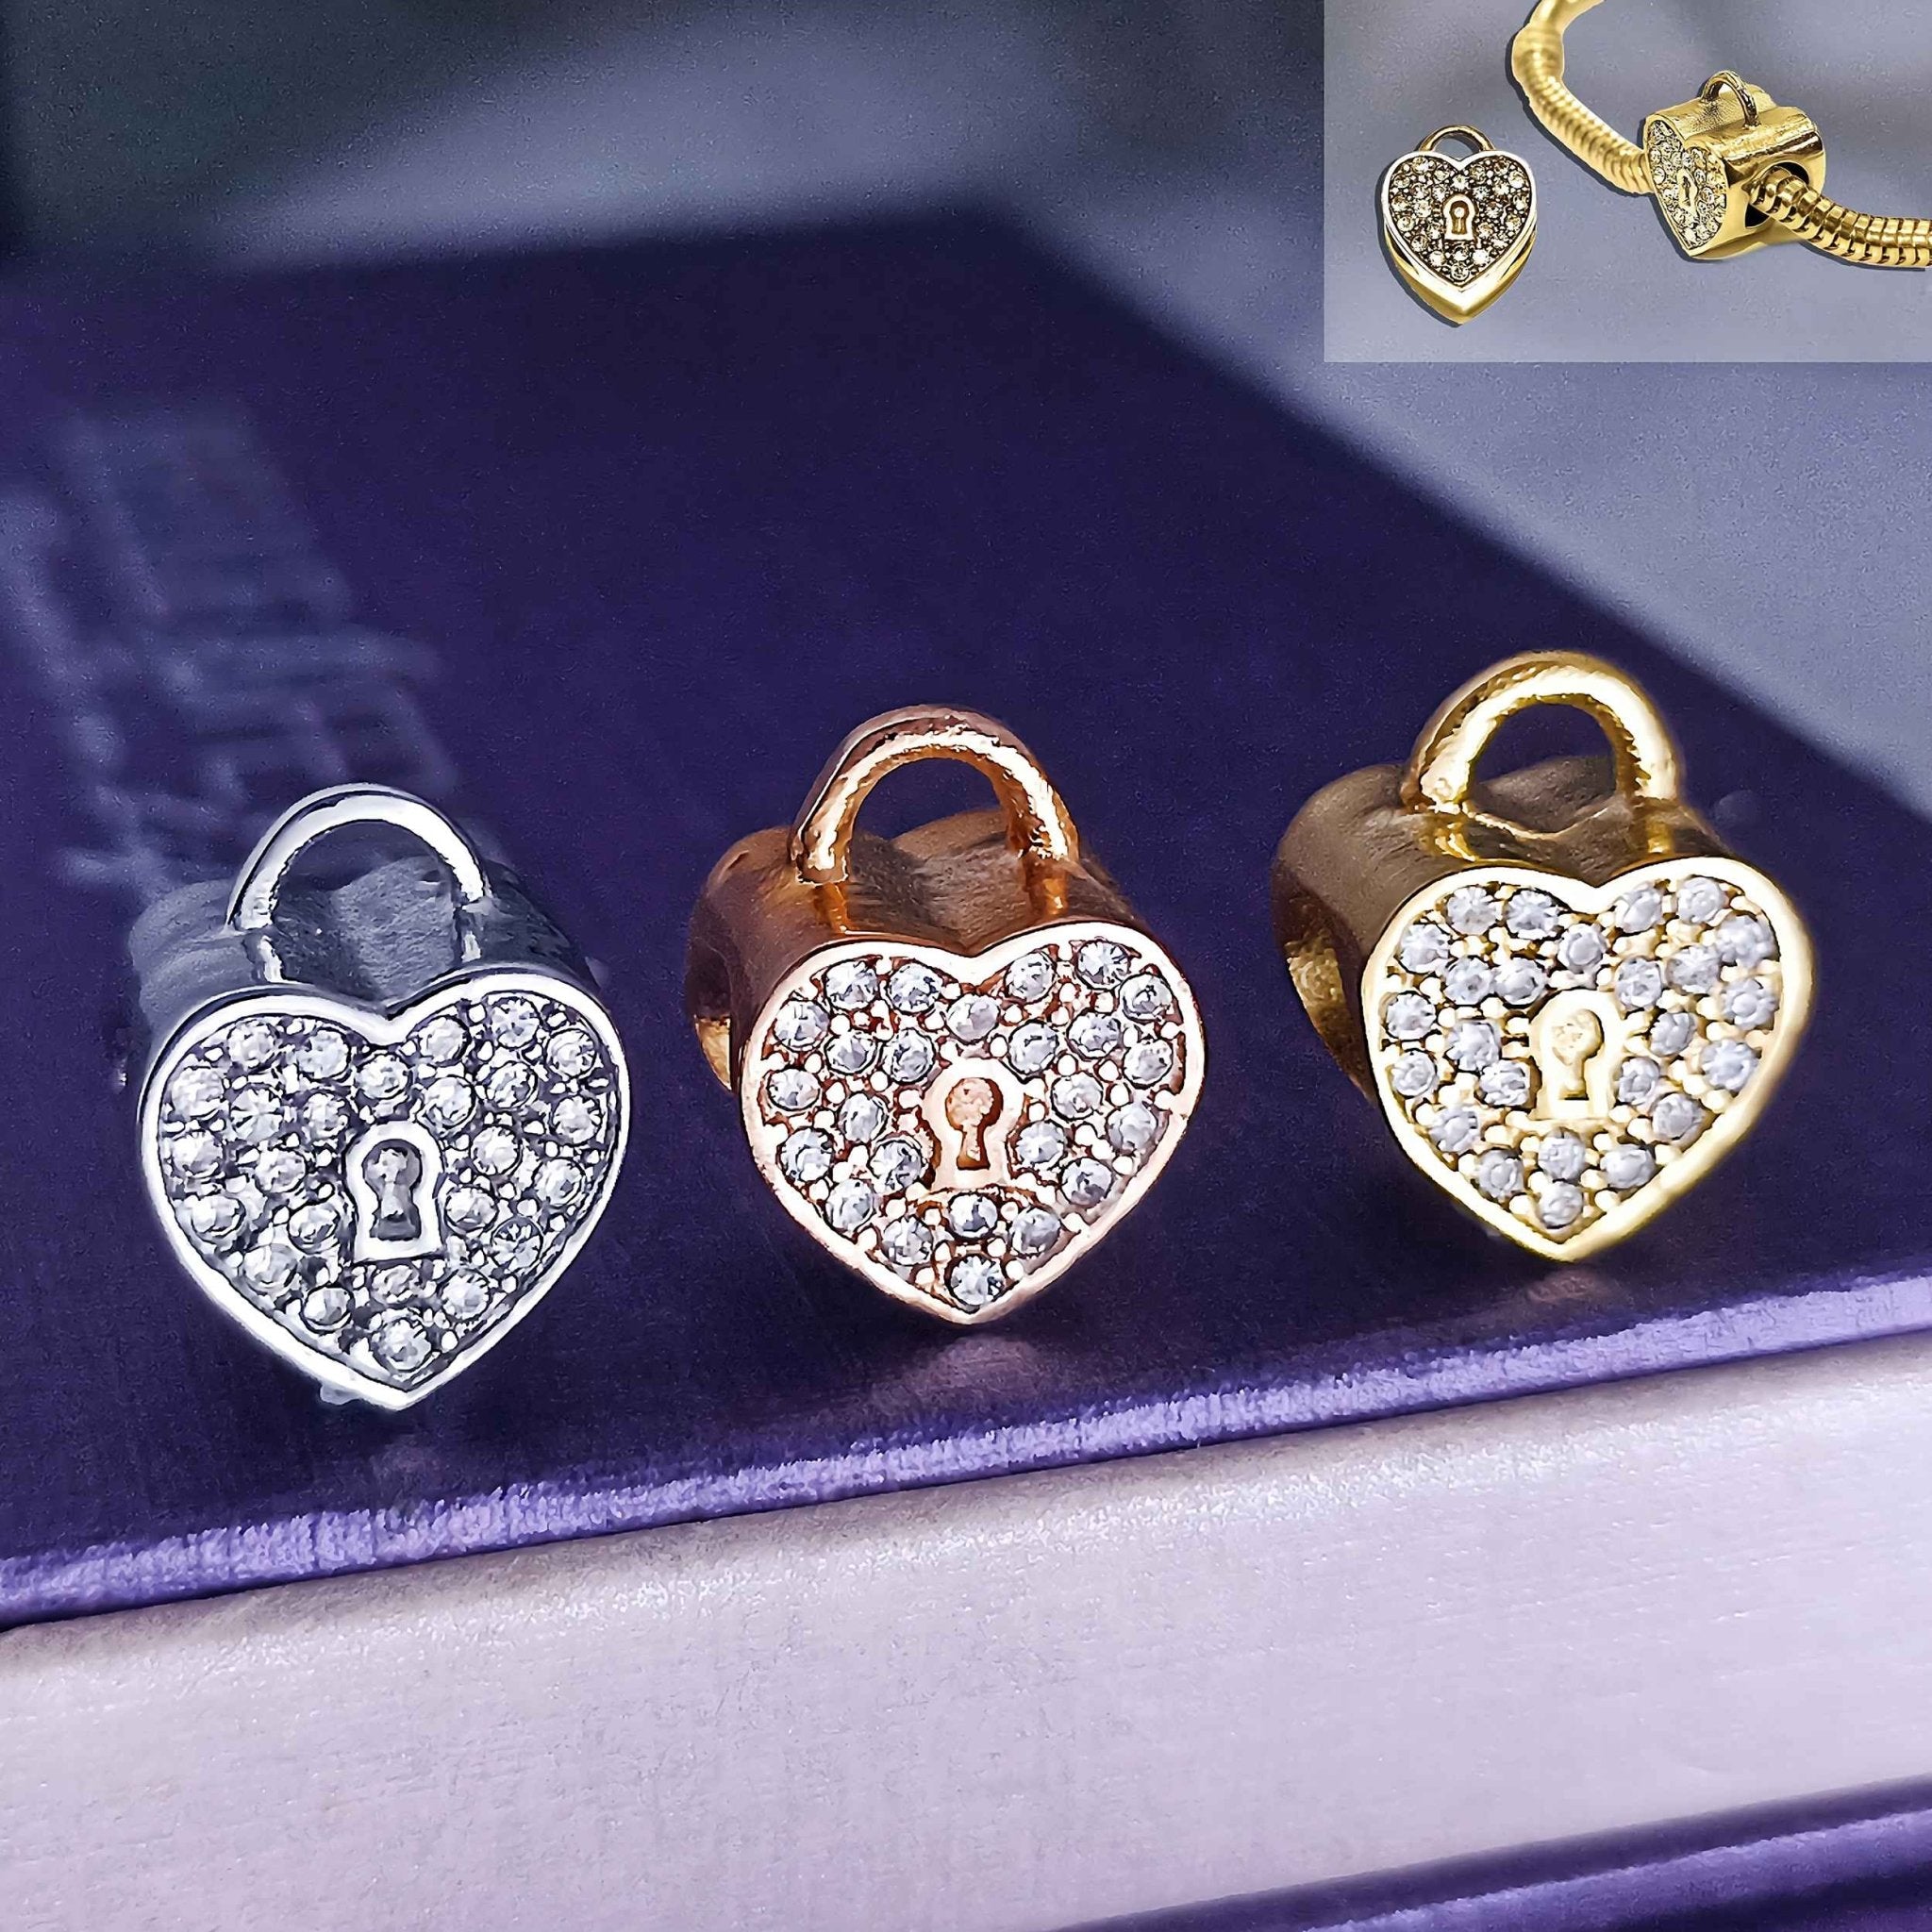 Diamond Heart Charm for Moments Bracelet - Moments Charm Bracelets by Belle Fever